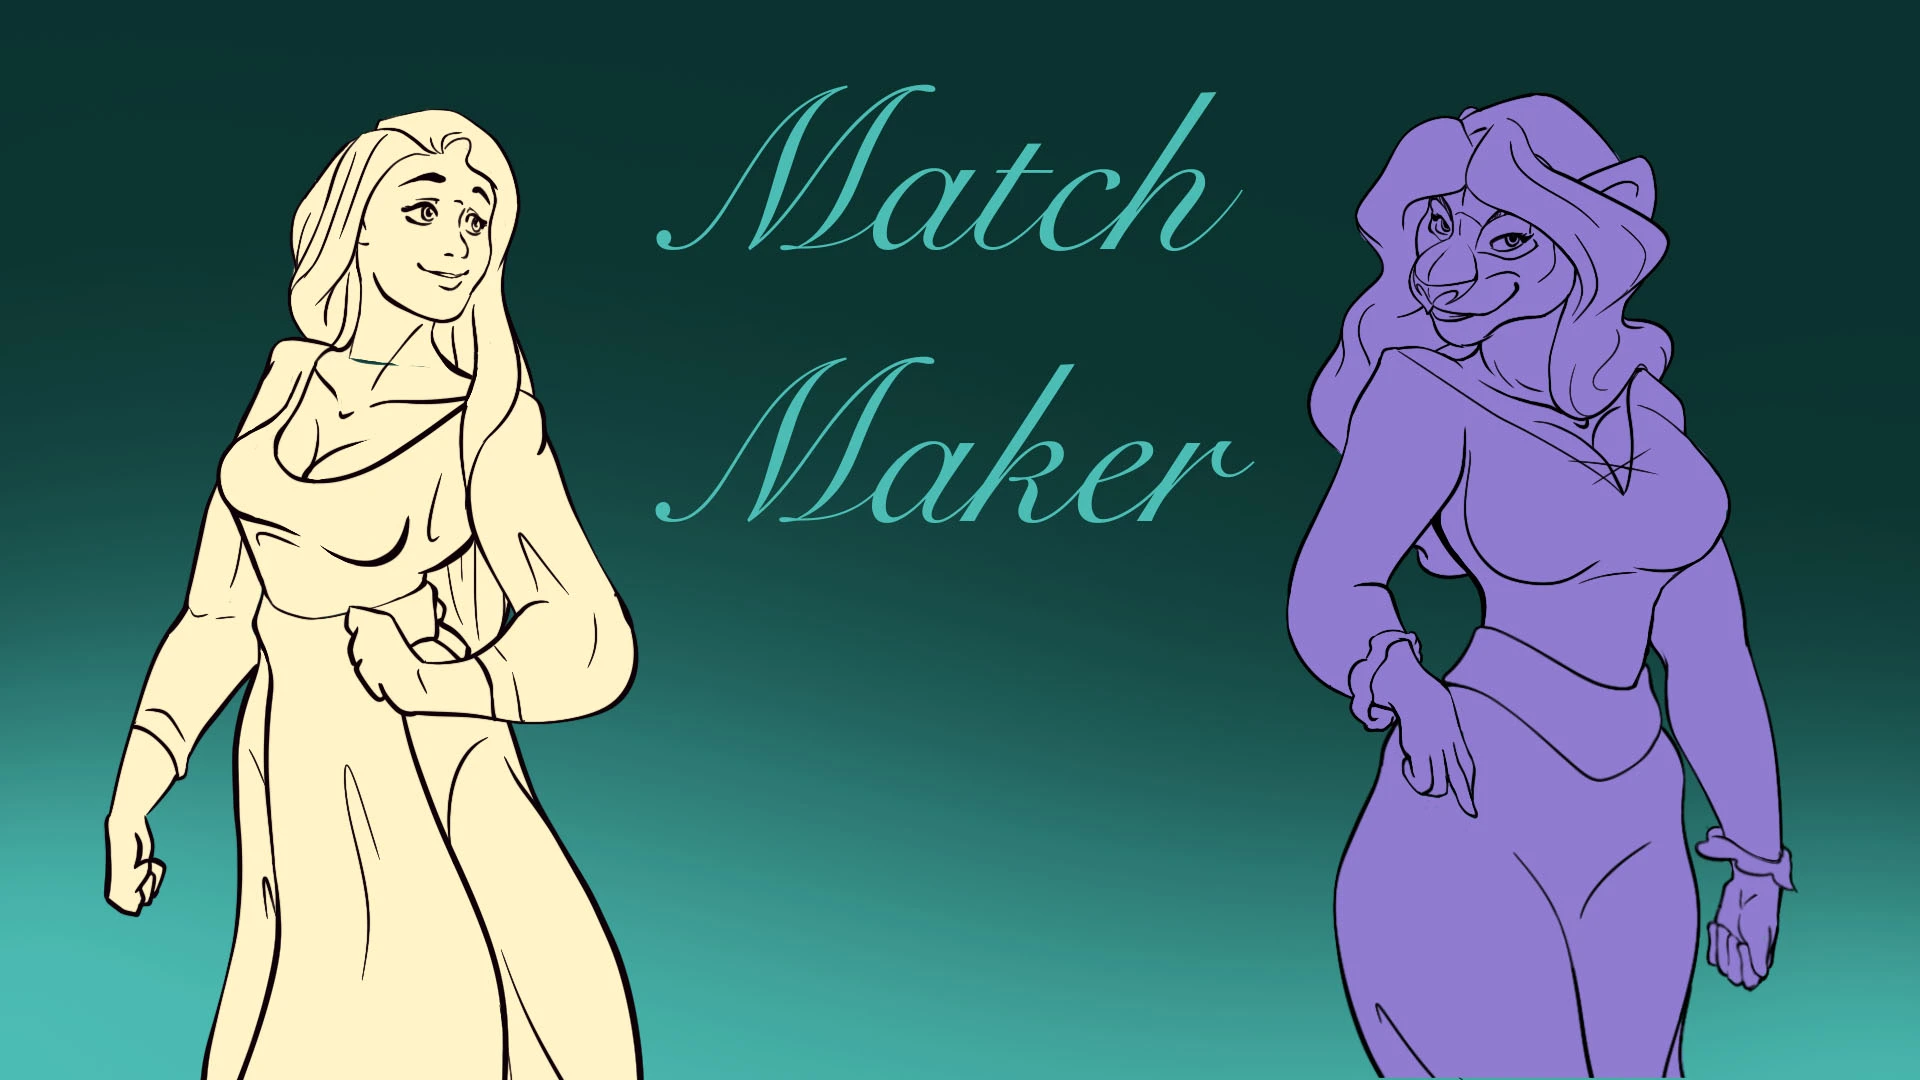 Match Maker main image